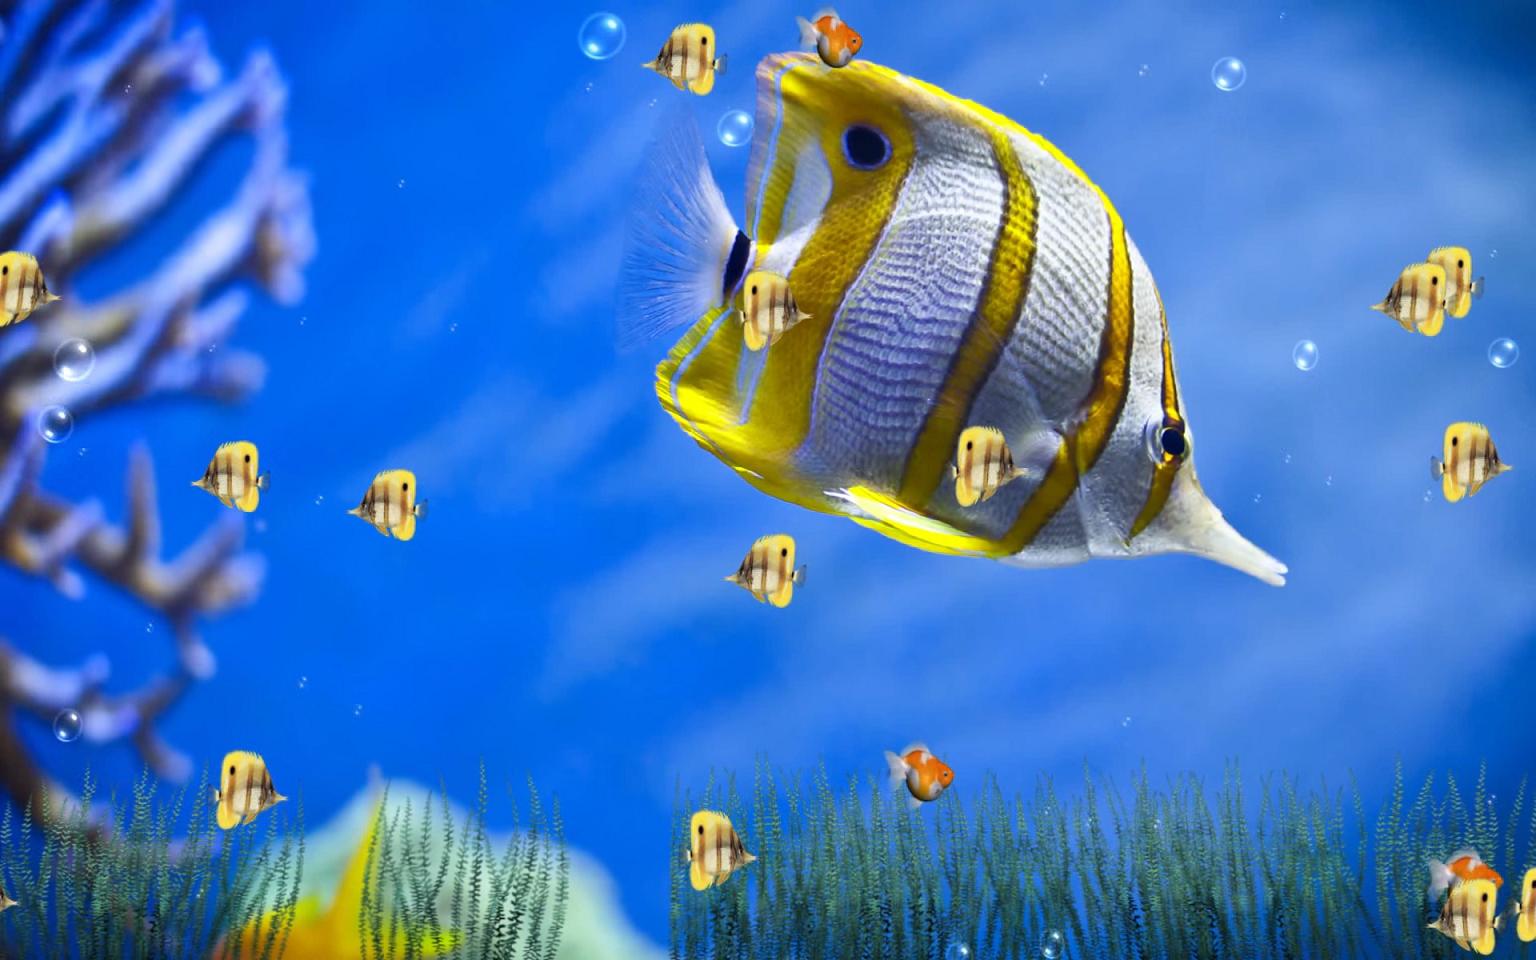 Now Marine Life Aquarium Animated Wallpaper